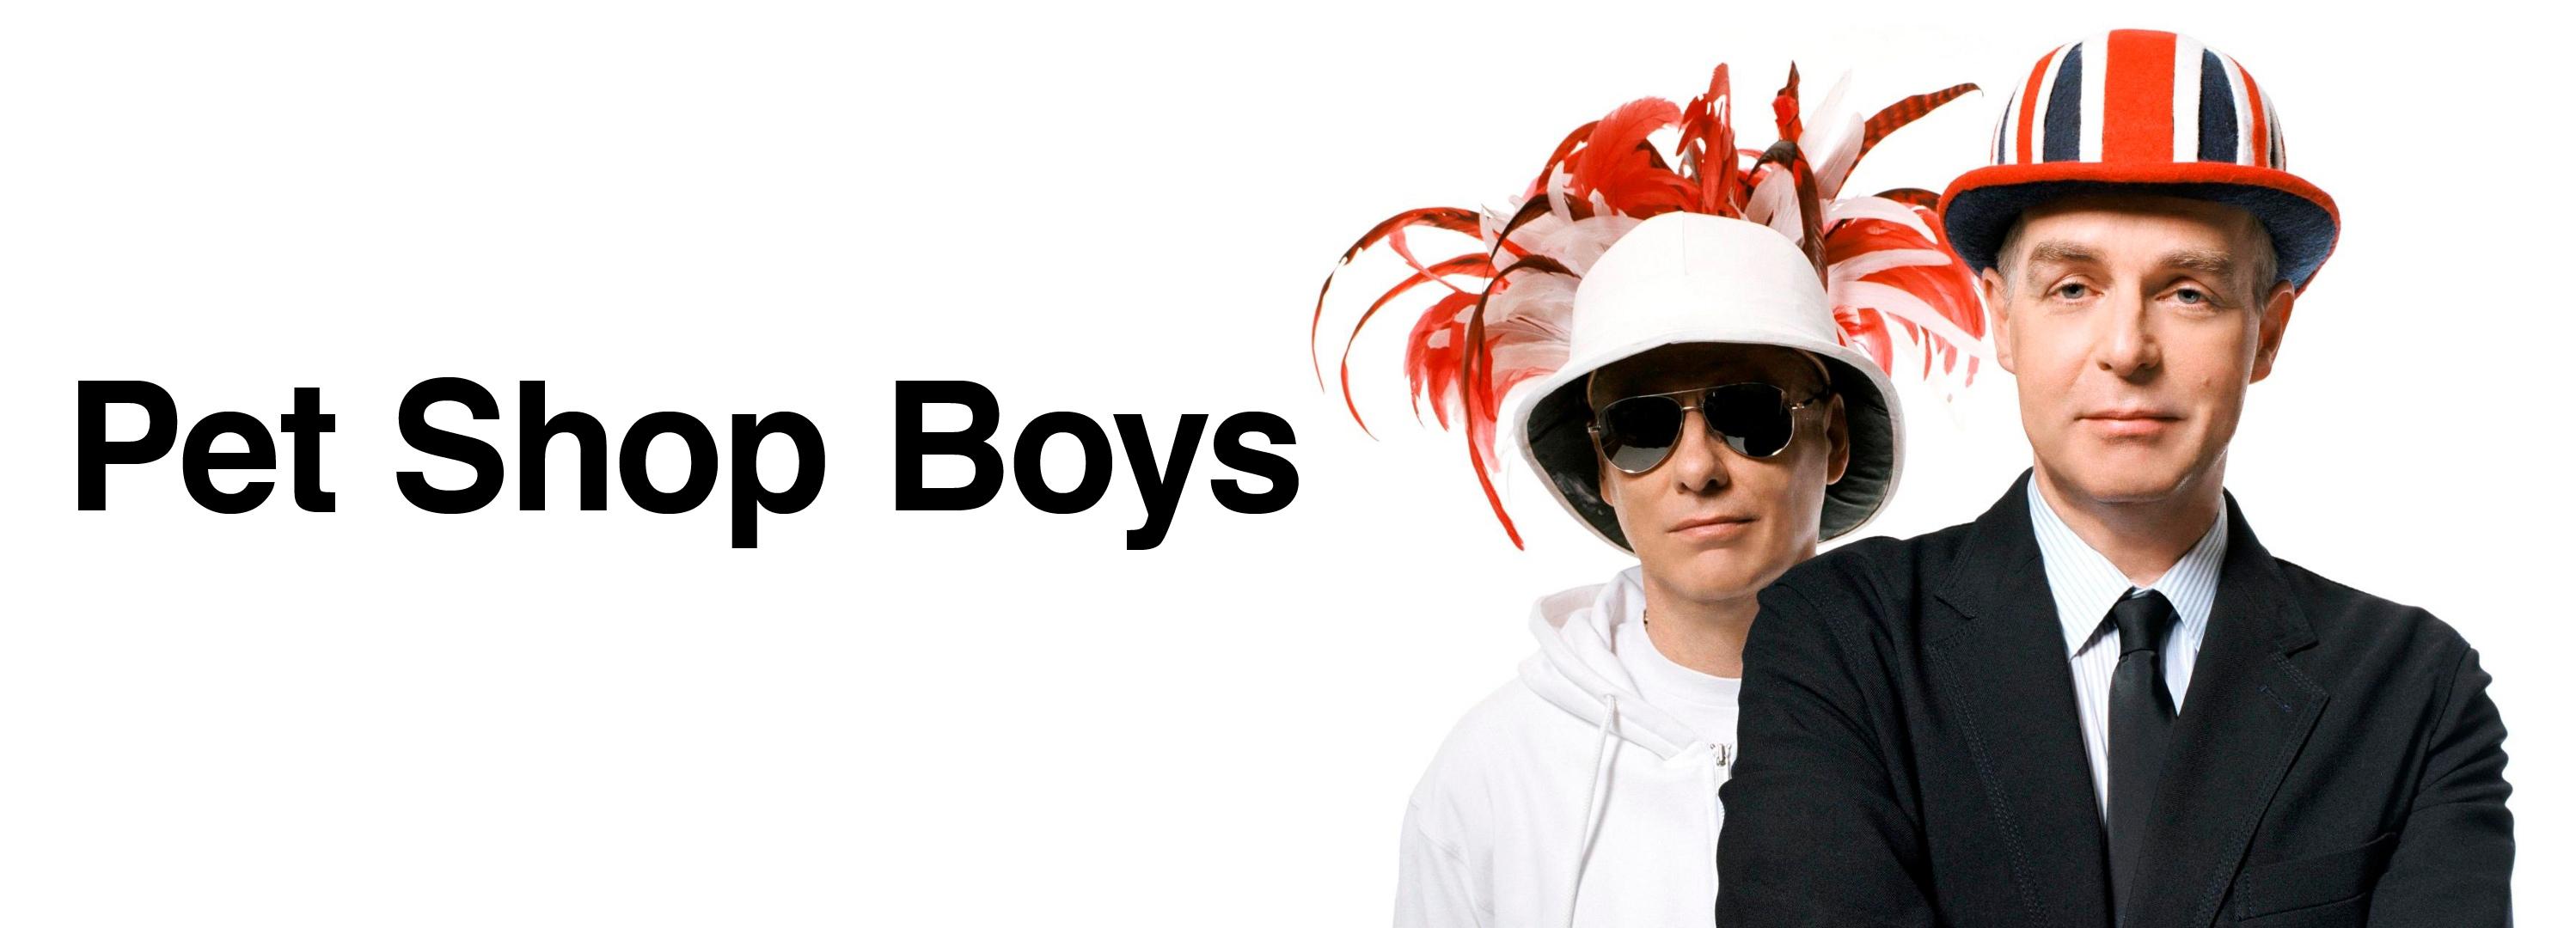 Pet Shop Boys. The Unofficial Website